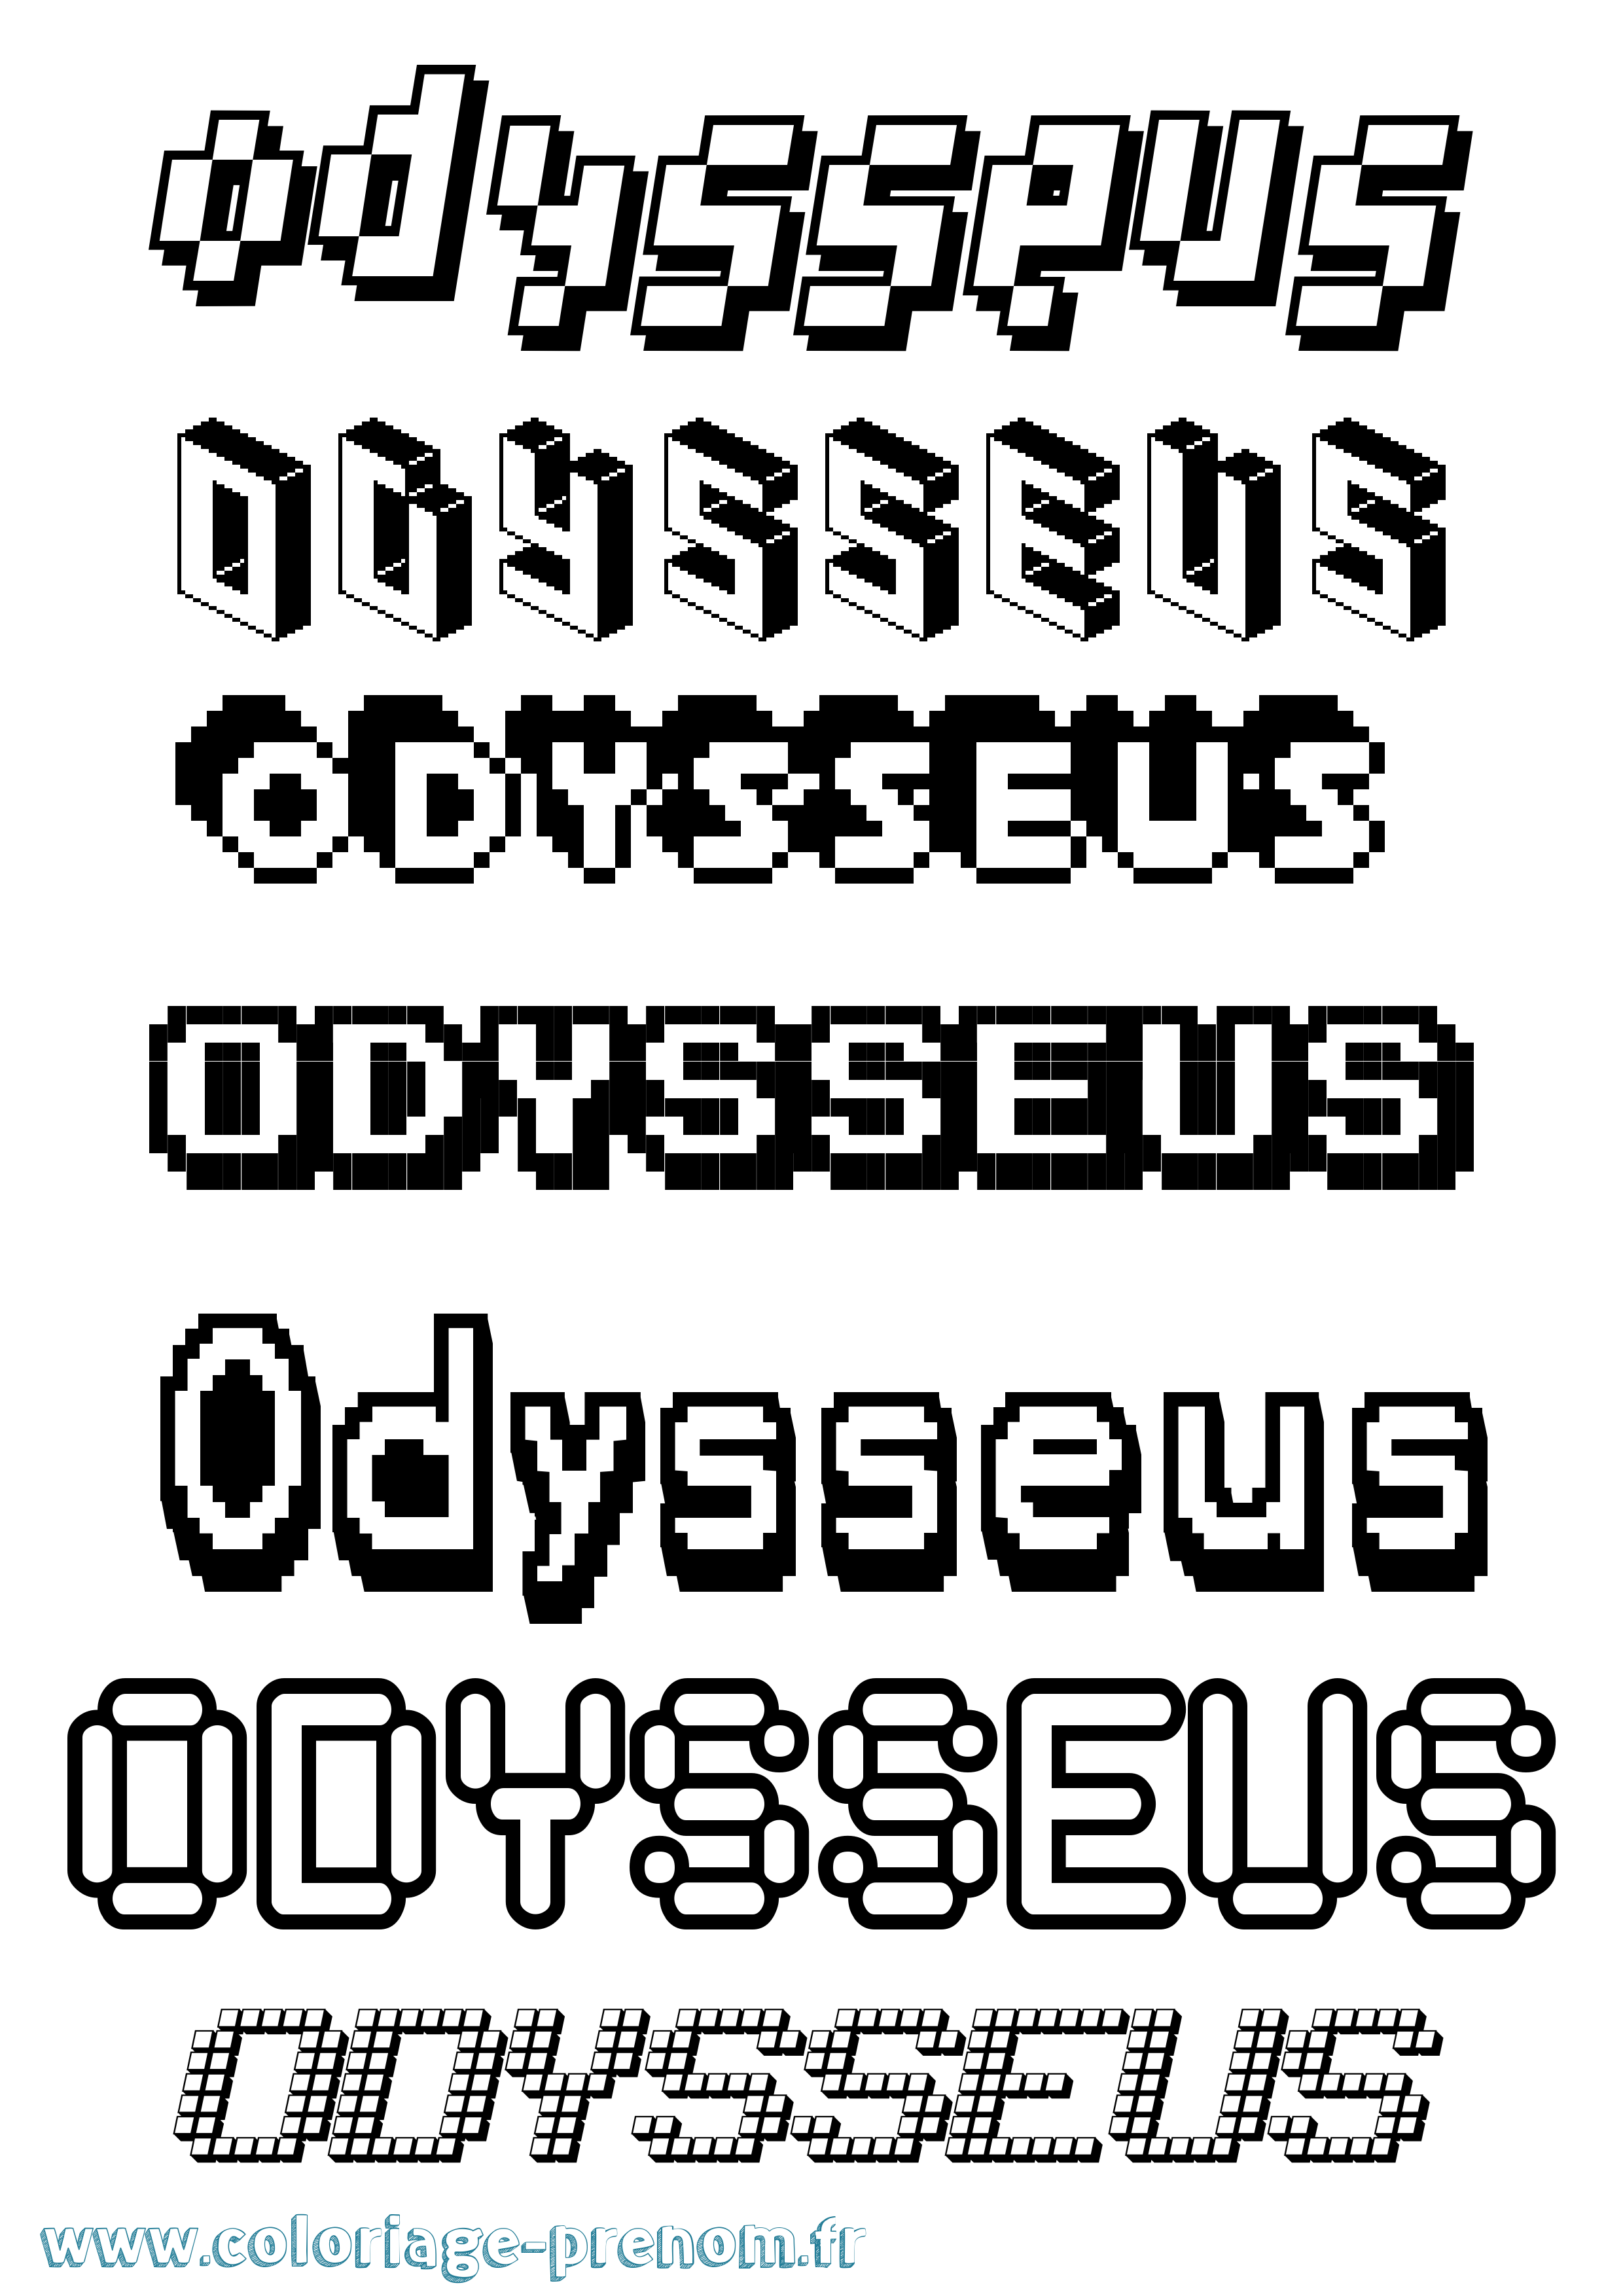 Coloriage prénom Odysseus Pixel